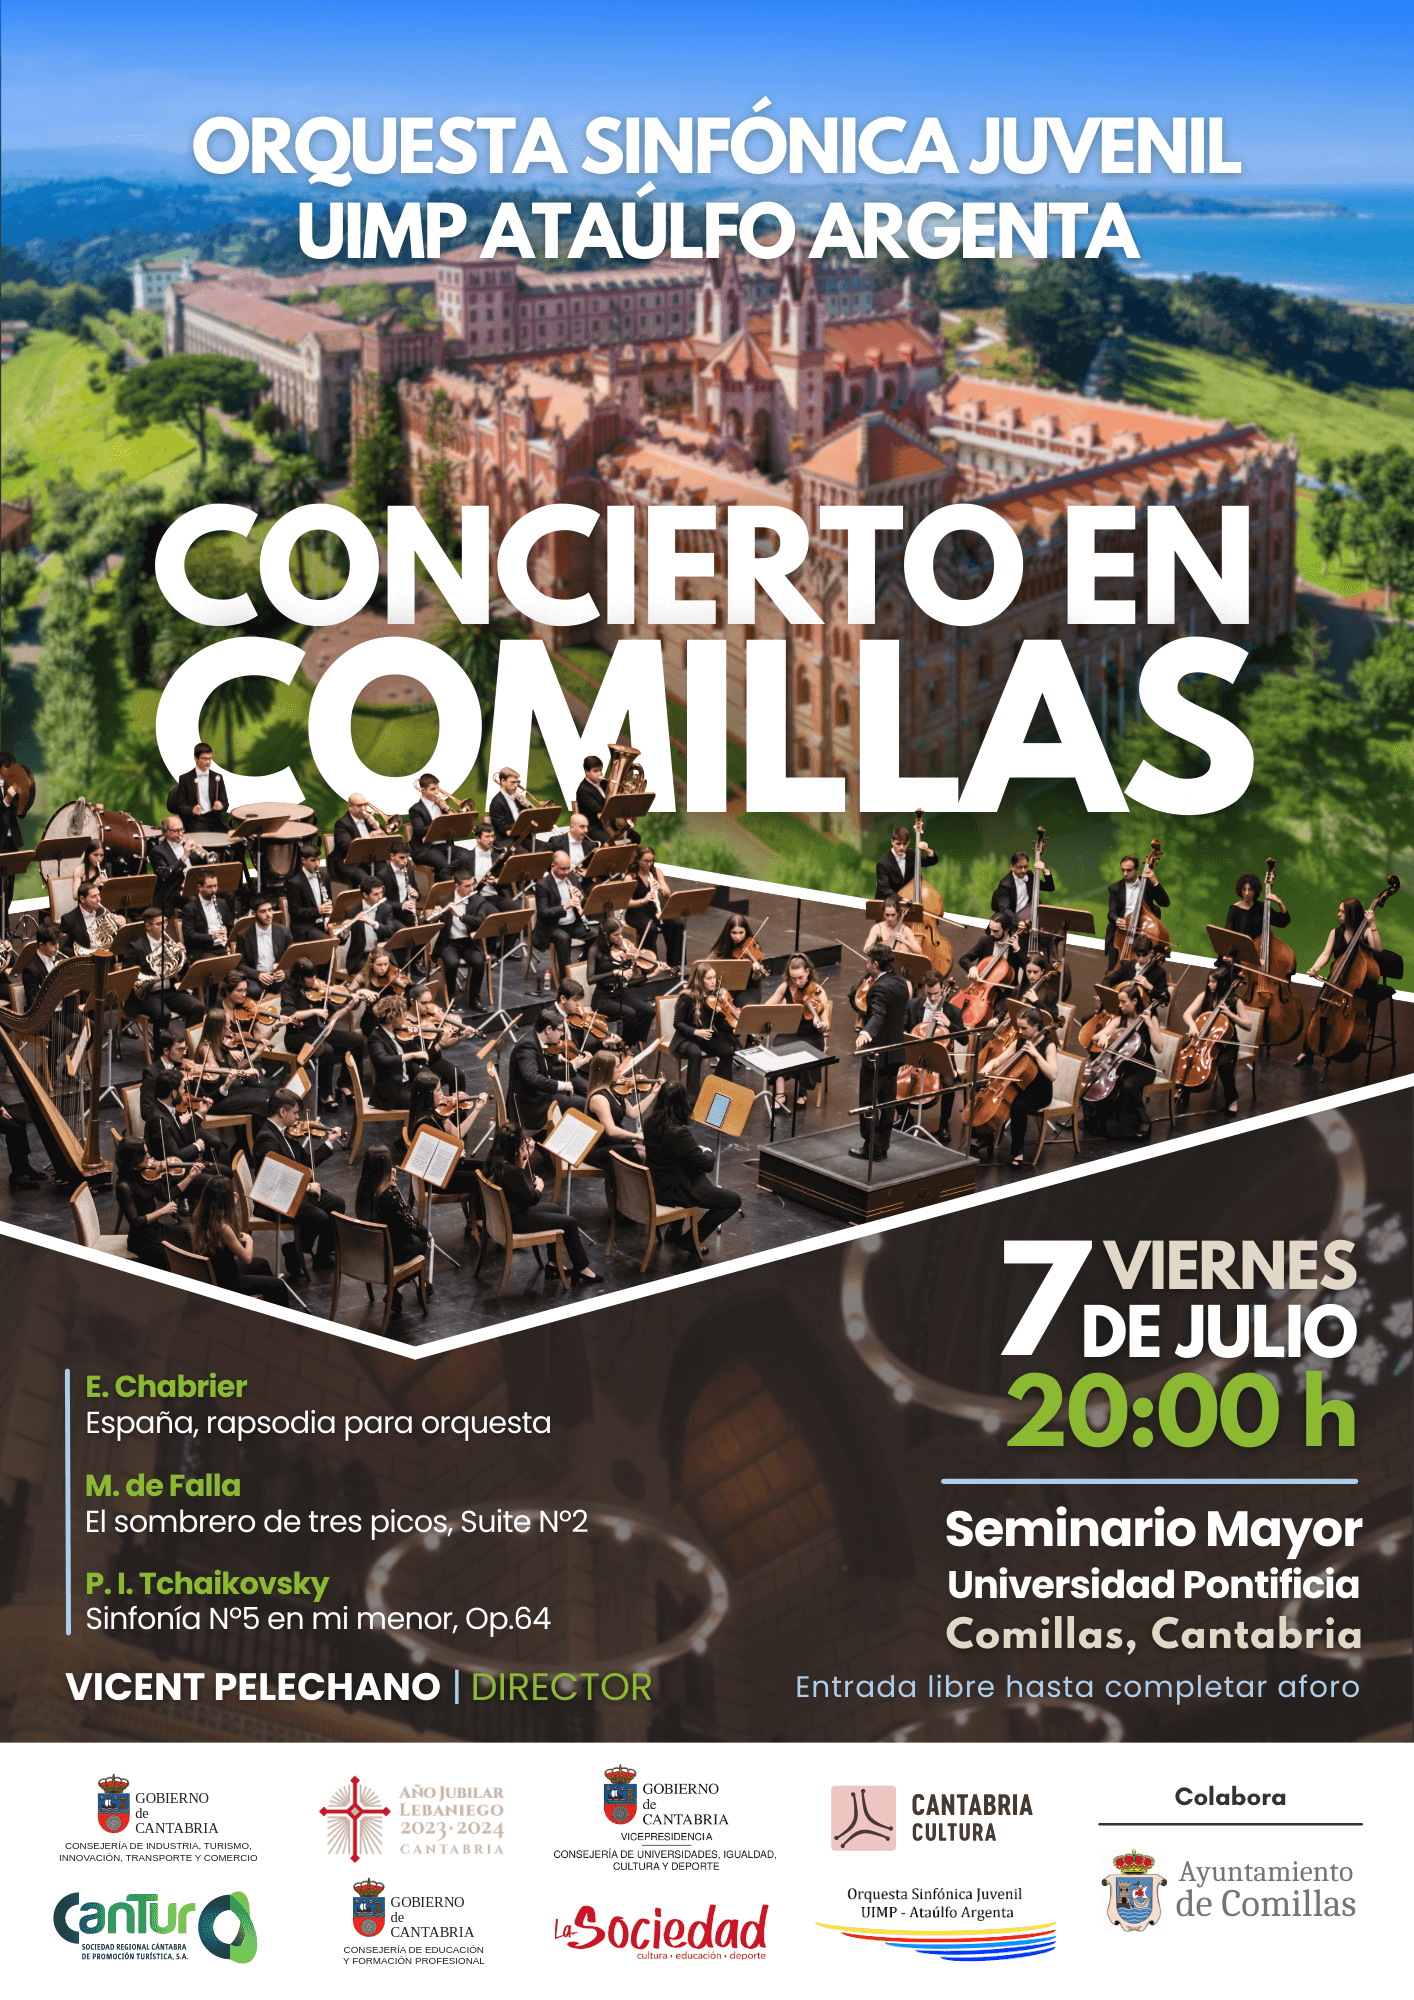 Concierto en Comillas – Orquesta Sinfónica Juvenil UIMP Ataúlfo Argenta